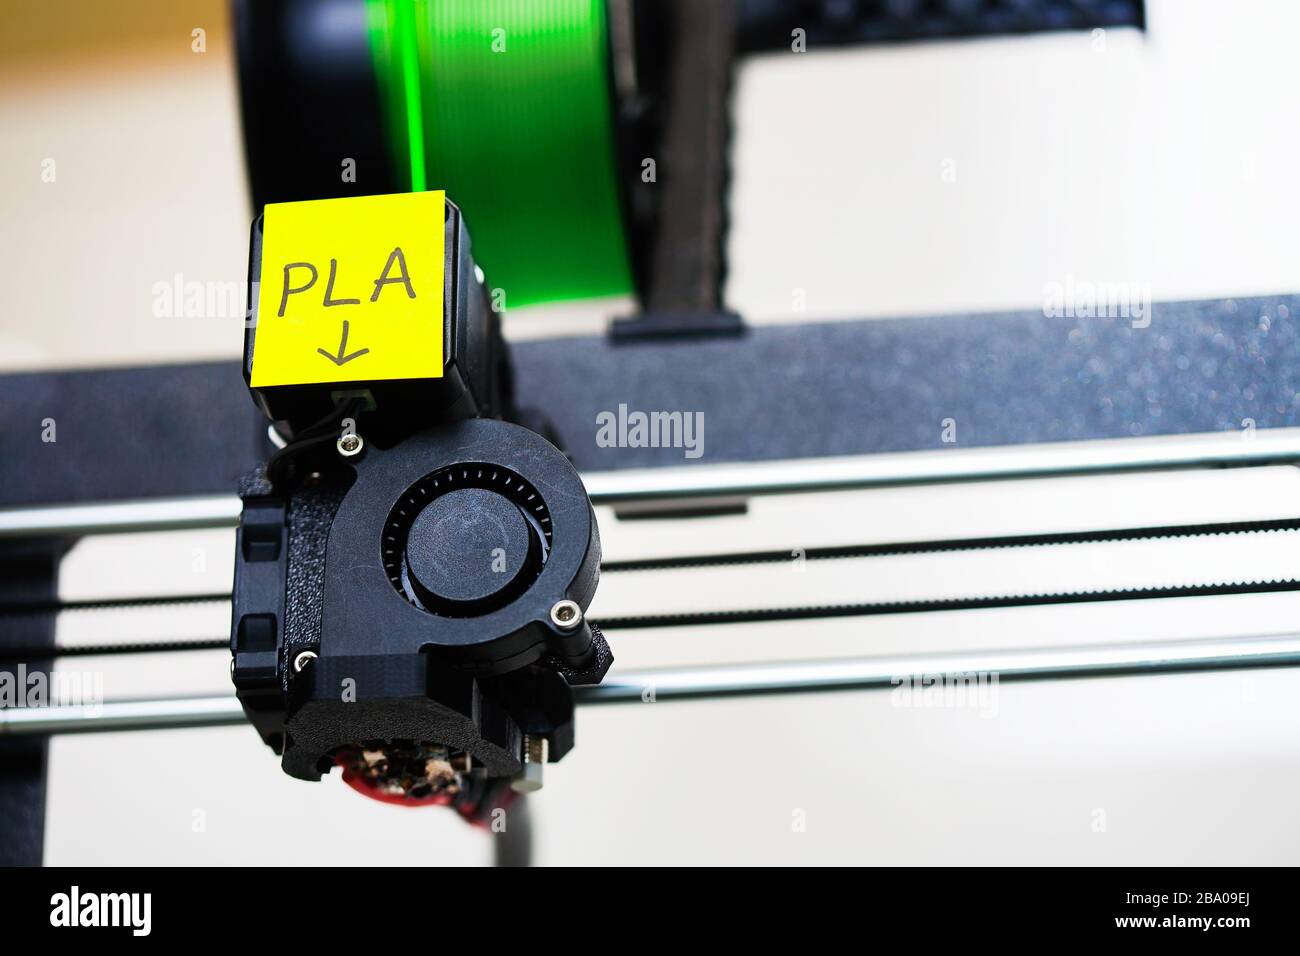 Una impresora 3d que utiliza filamento de tipo PLA y muestra el cabezal de impresión y el eje x. Foto de stock